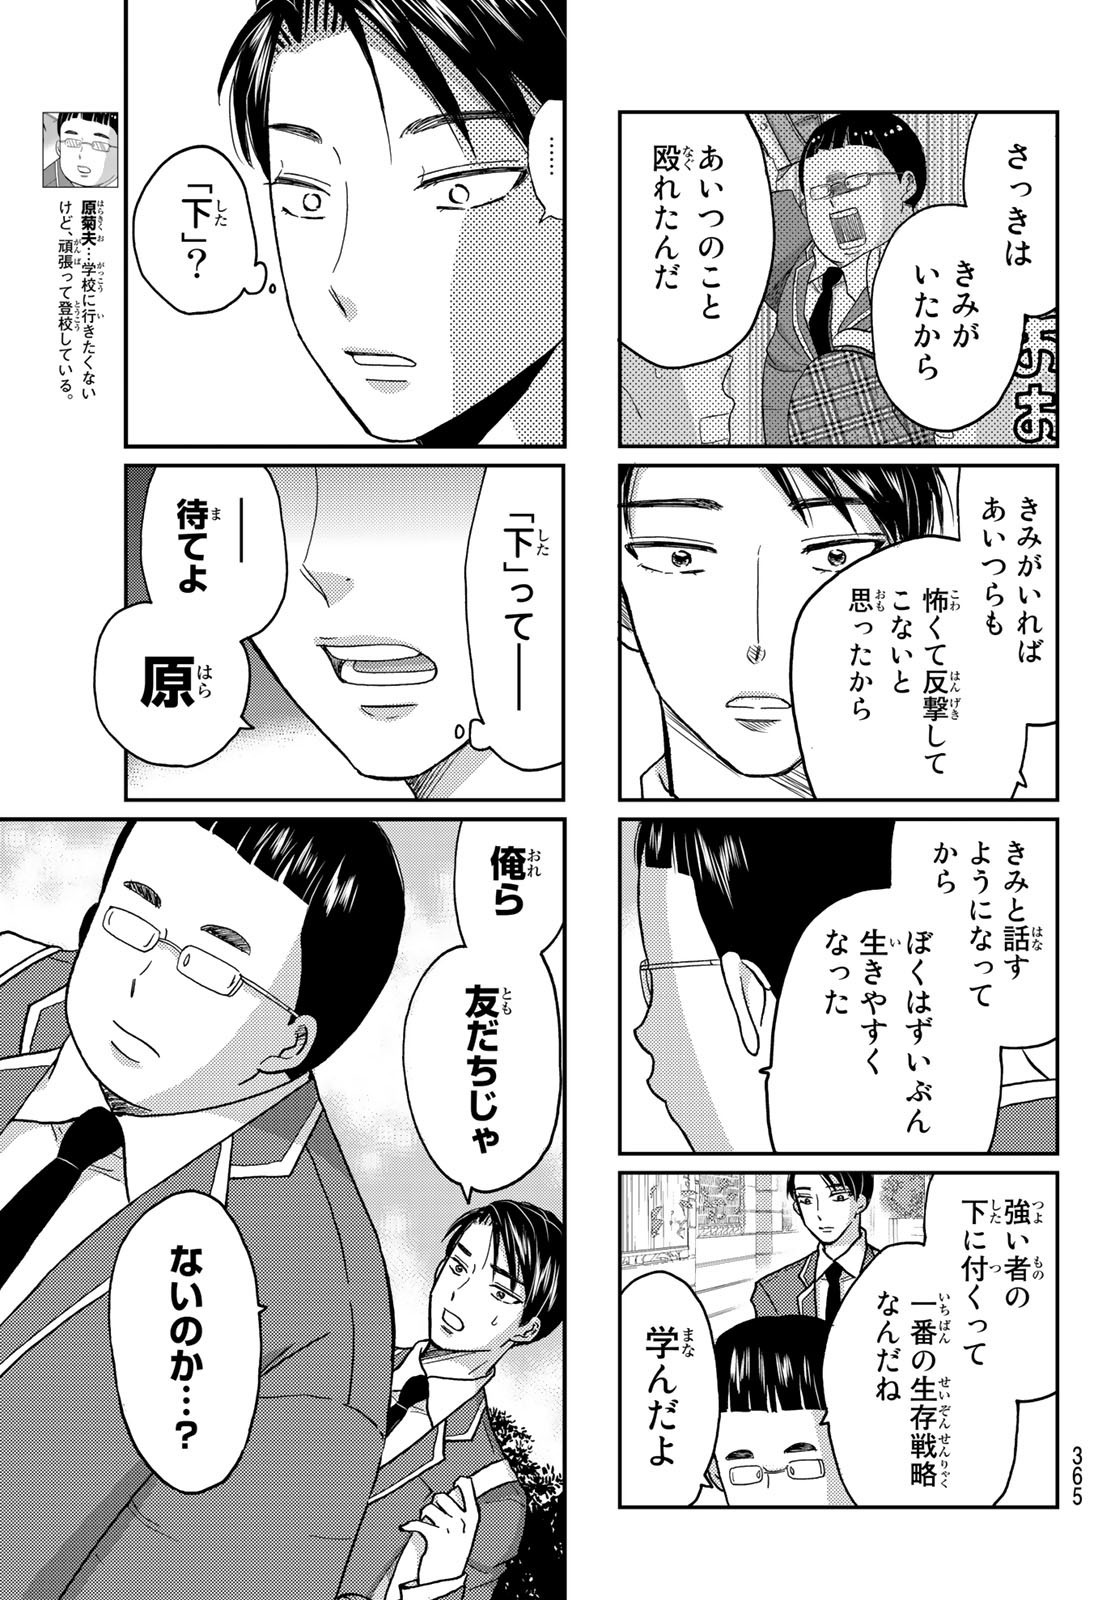 Hinata-san, Hoshino desu. - Chapter 027 - Page 3